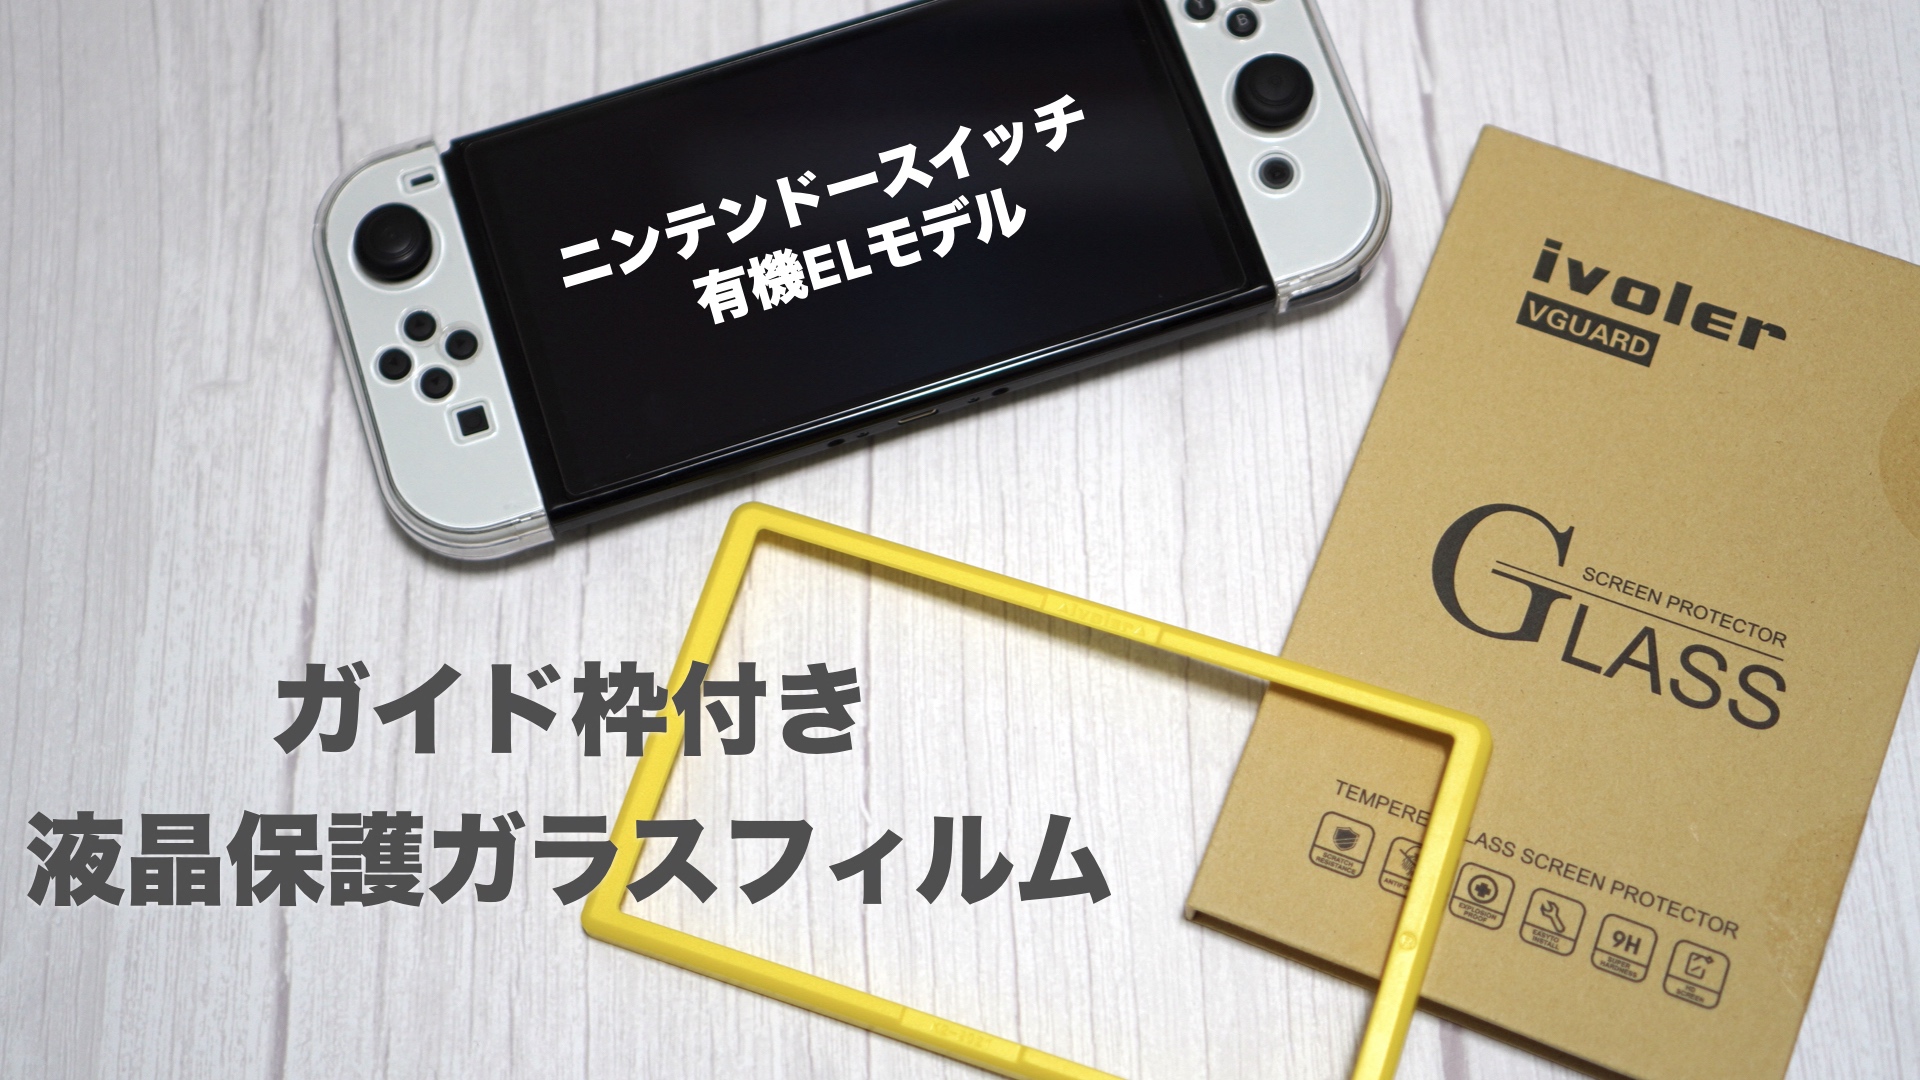 【新品】Nintendo Switch有機ELホワイト &ガラスフィルム